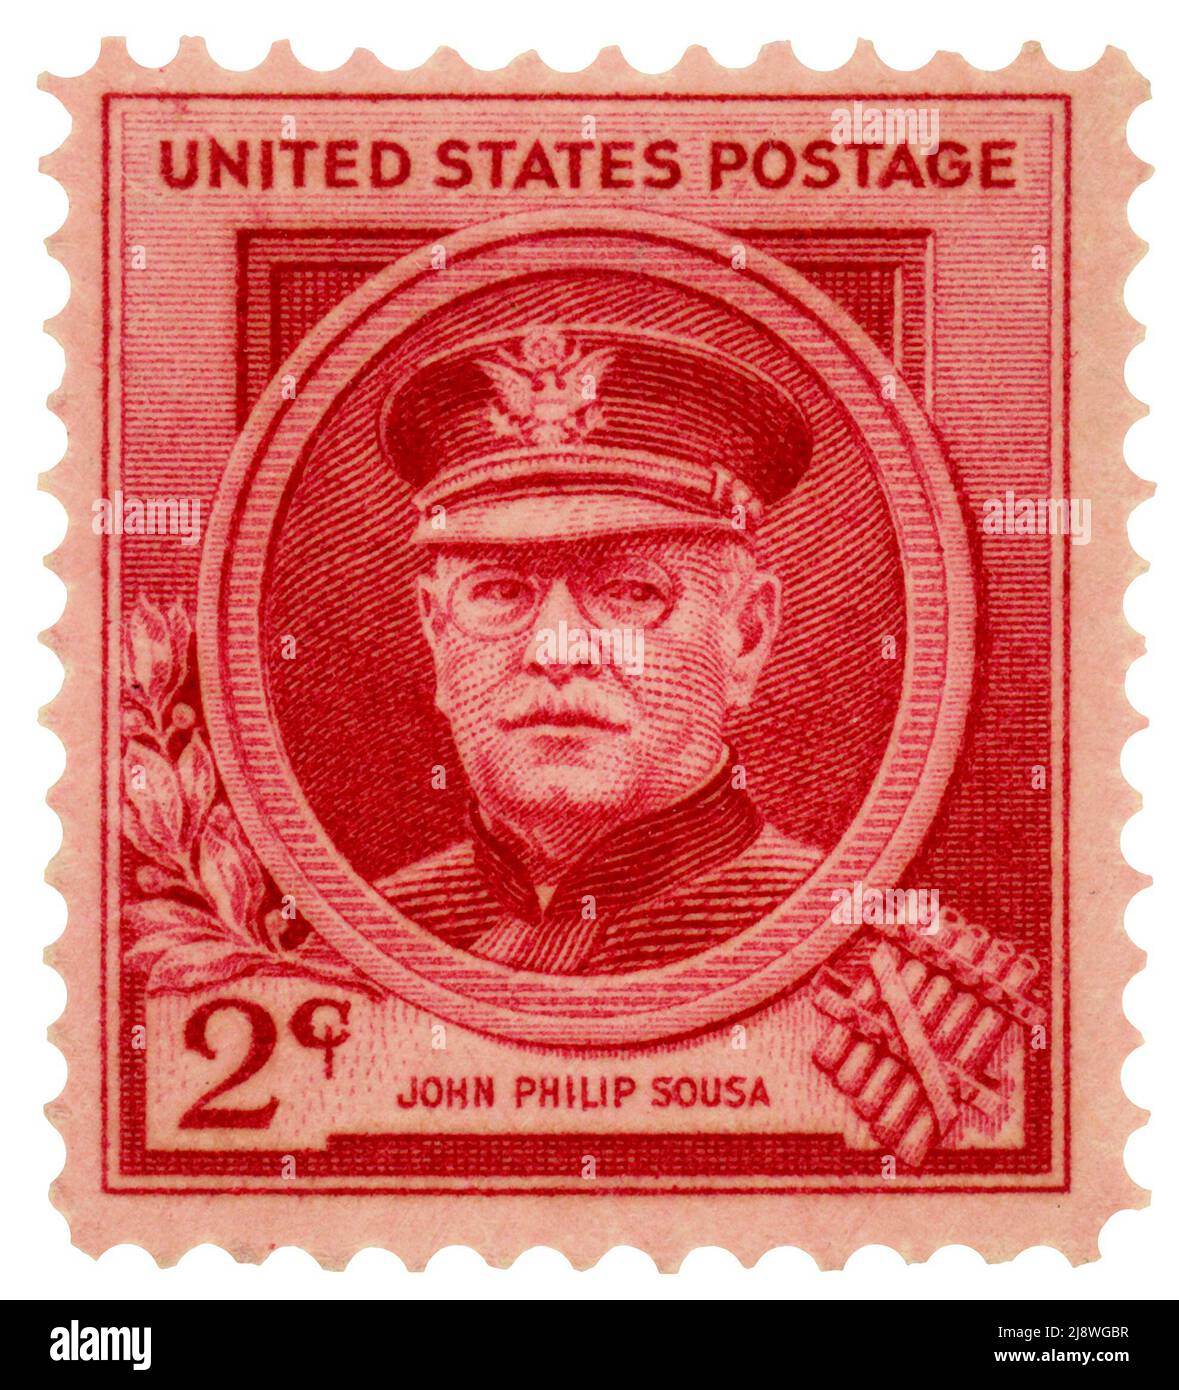 John Philip Sousa (1854-1932) leitete von 1880 bis 1892 die US Marine Corps Band und dirigierte dann seine eigene Band. Er führte zahlreiche 100 Märsche. Zu den berühmten Märschen gehören „Semper Fidelis“ (marsch des Marine Corps), „der Marsch der Washington Post“ und „die Sterne und Streifen für immer“. Er ist hier auf einem roséfarbenen Stempel abgebildet. Stockfoto